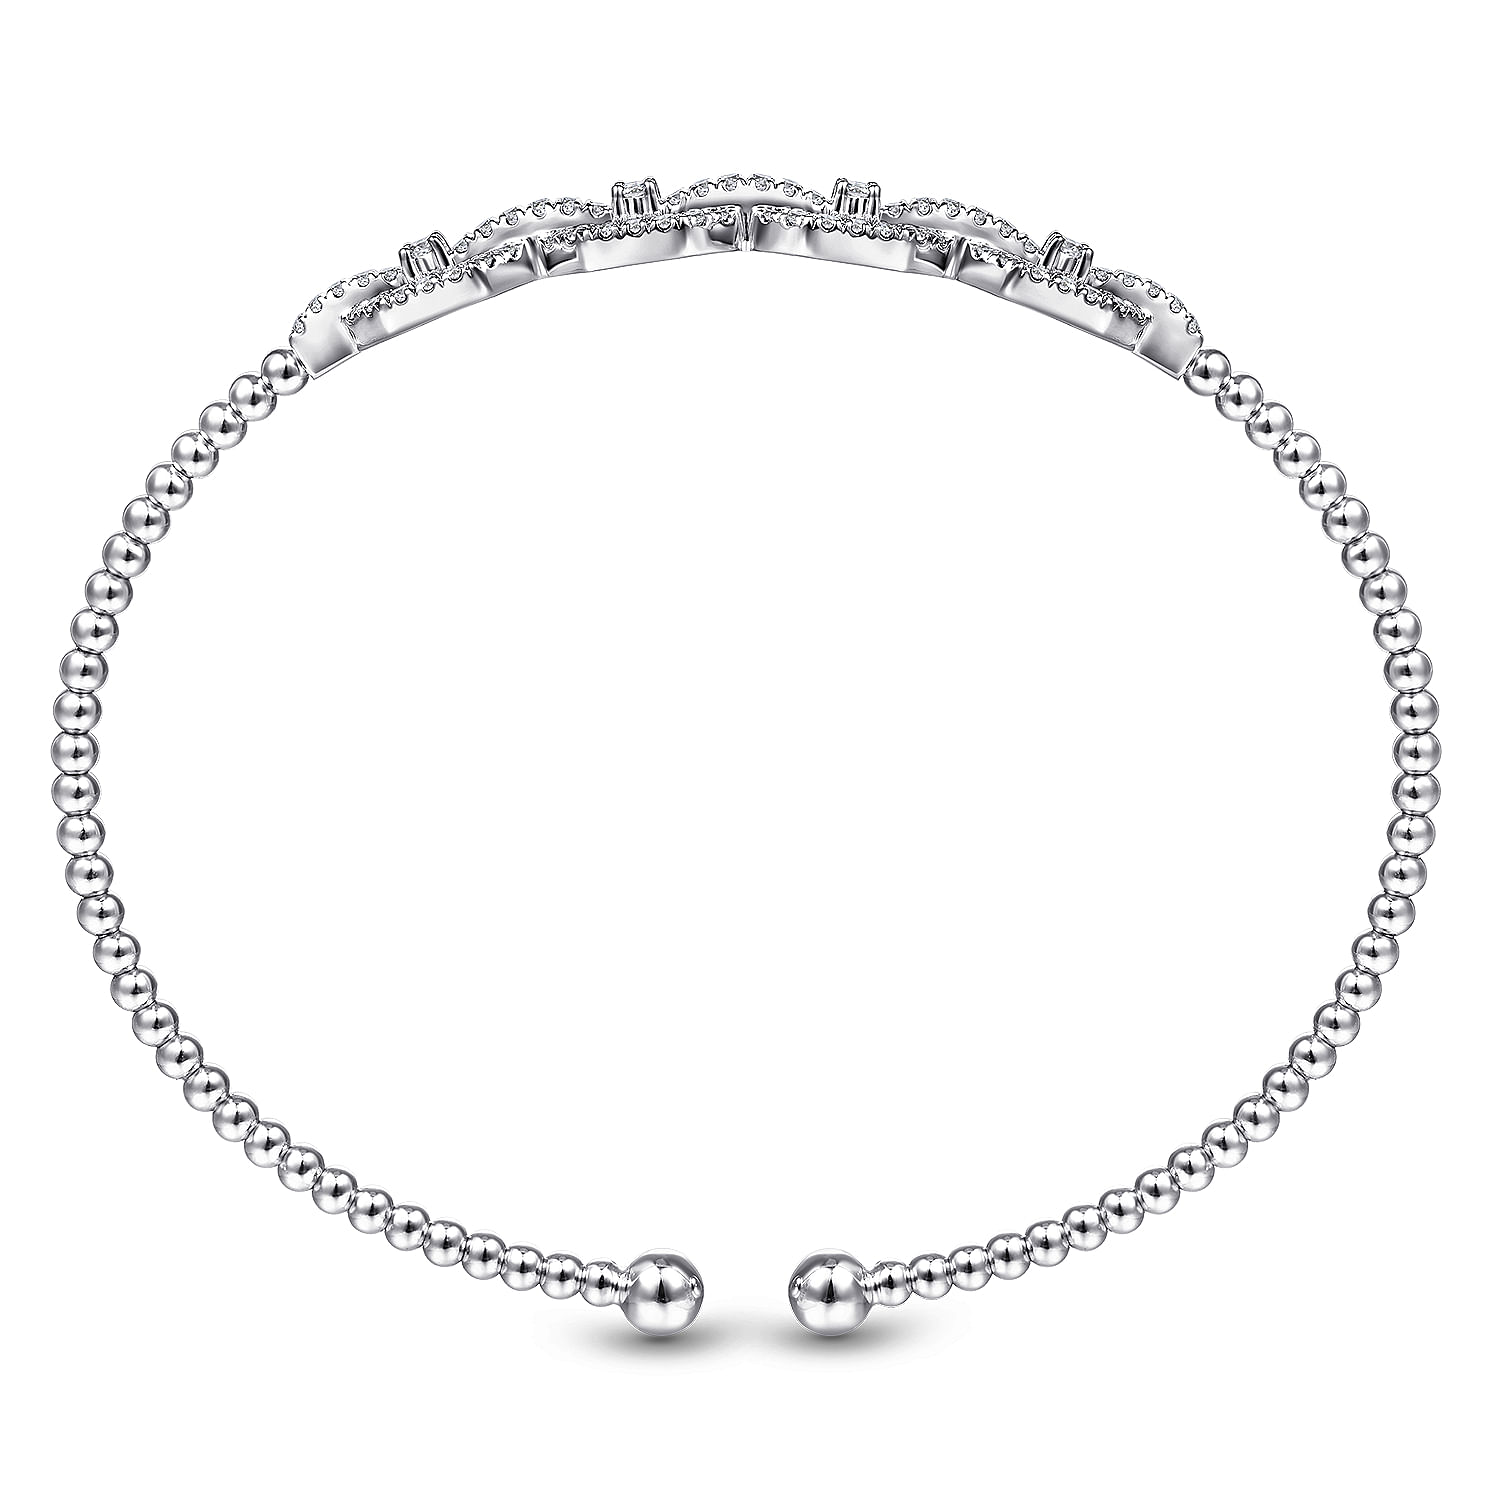 14K White Gold Bujukan Bead Cuff Bracelet with Diamond Pavé Links